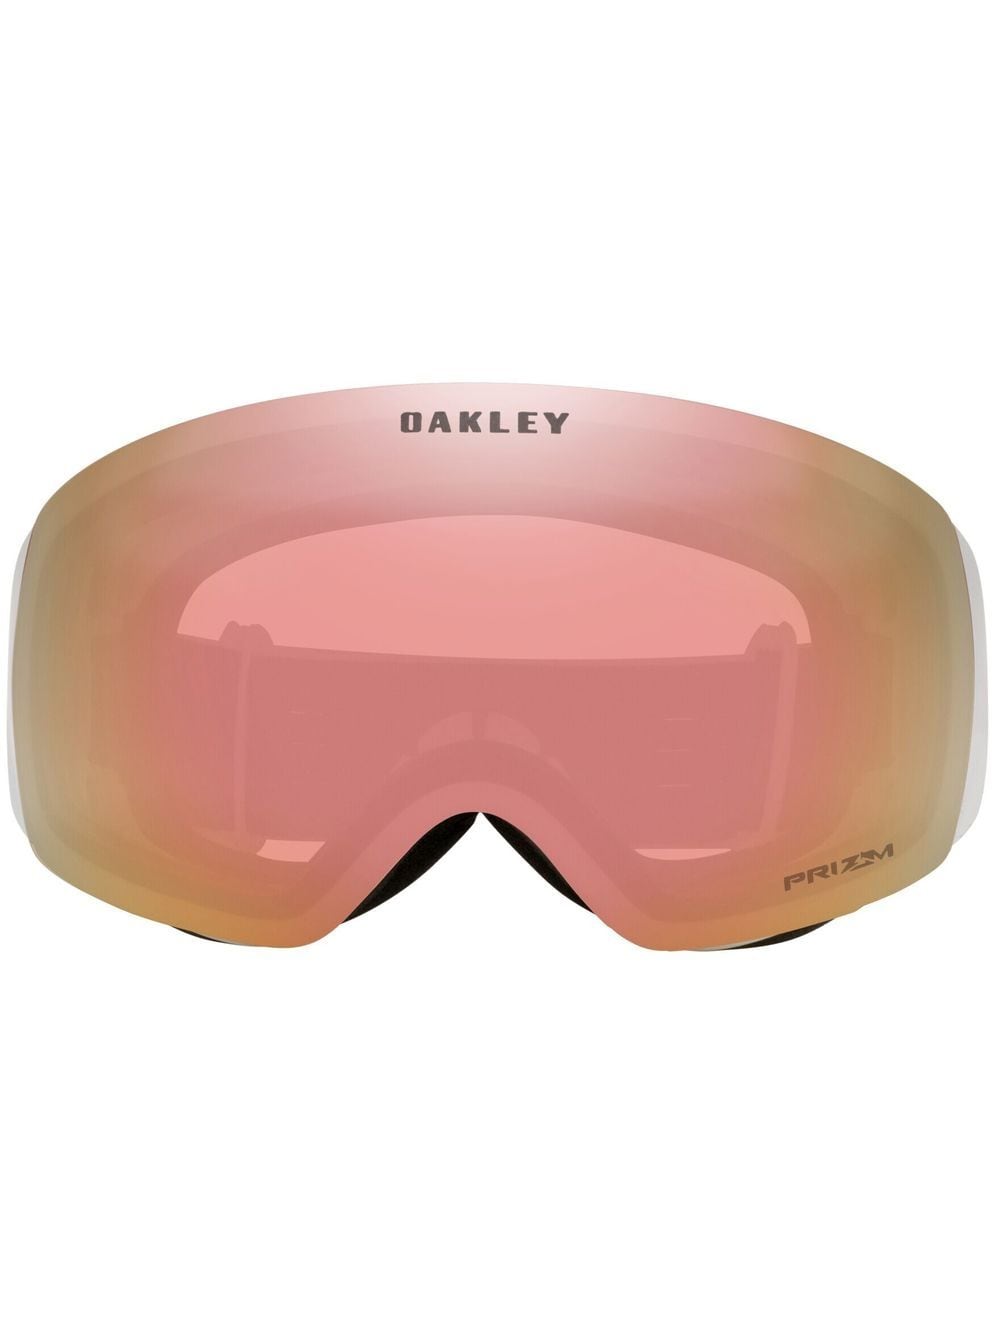 Oakley Flight Deck M Snow Goggles In White